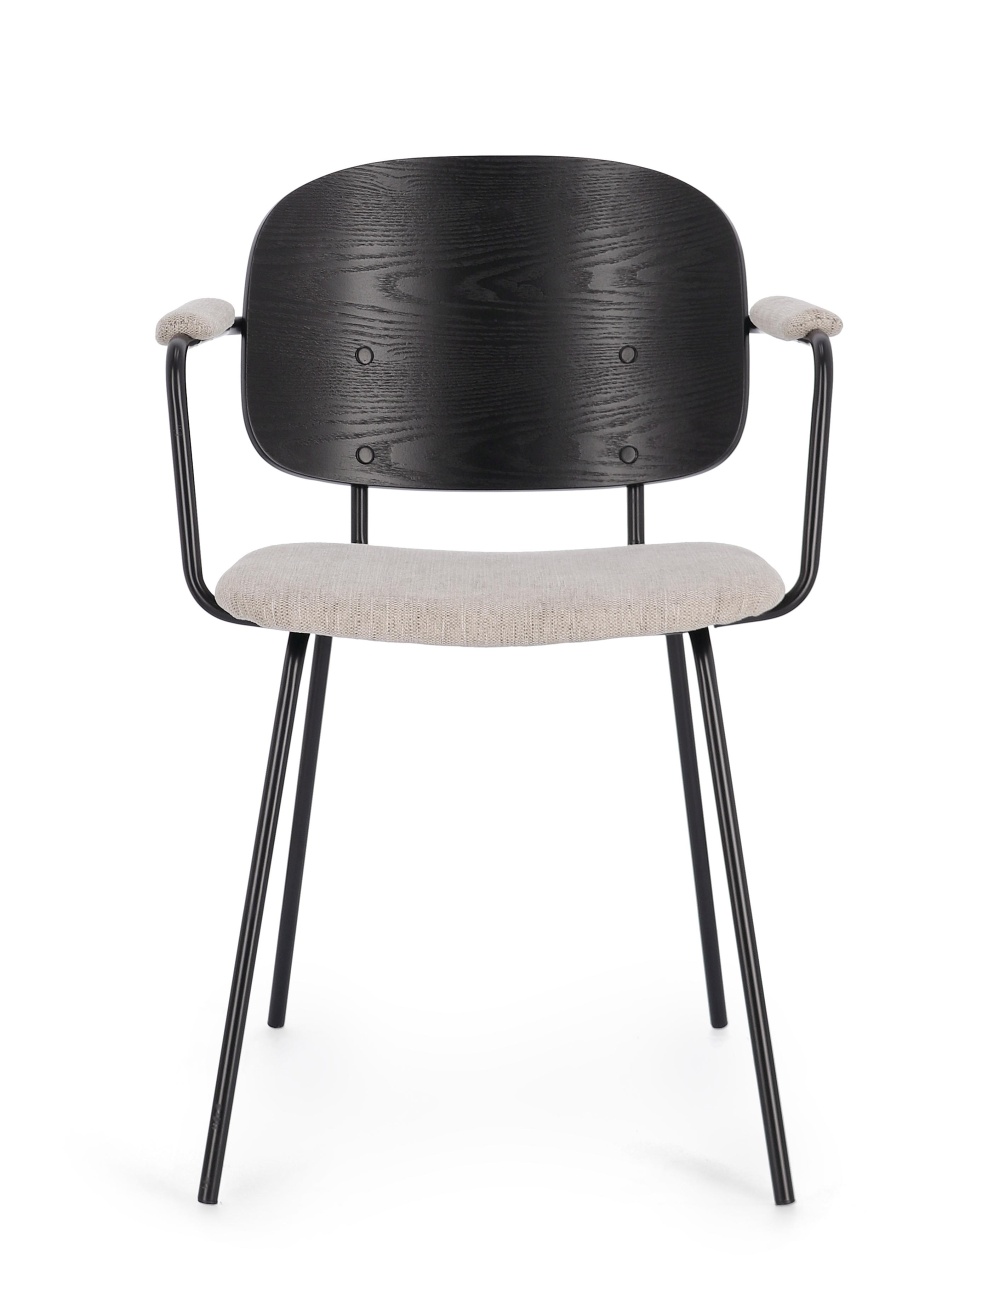 Der Esszimmerstuhl Sienna überzeugt mit seinem modernen Stil. Gefertigt wurde er aus Stoff, welcher einen natürlichen Farbton besitzt. Das Gestell ist aus Metall und hat eine schwarze Farbe. Der Stuhl besitzt eine Sitzhöhe von 48 cm.